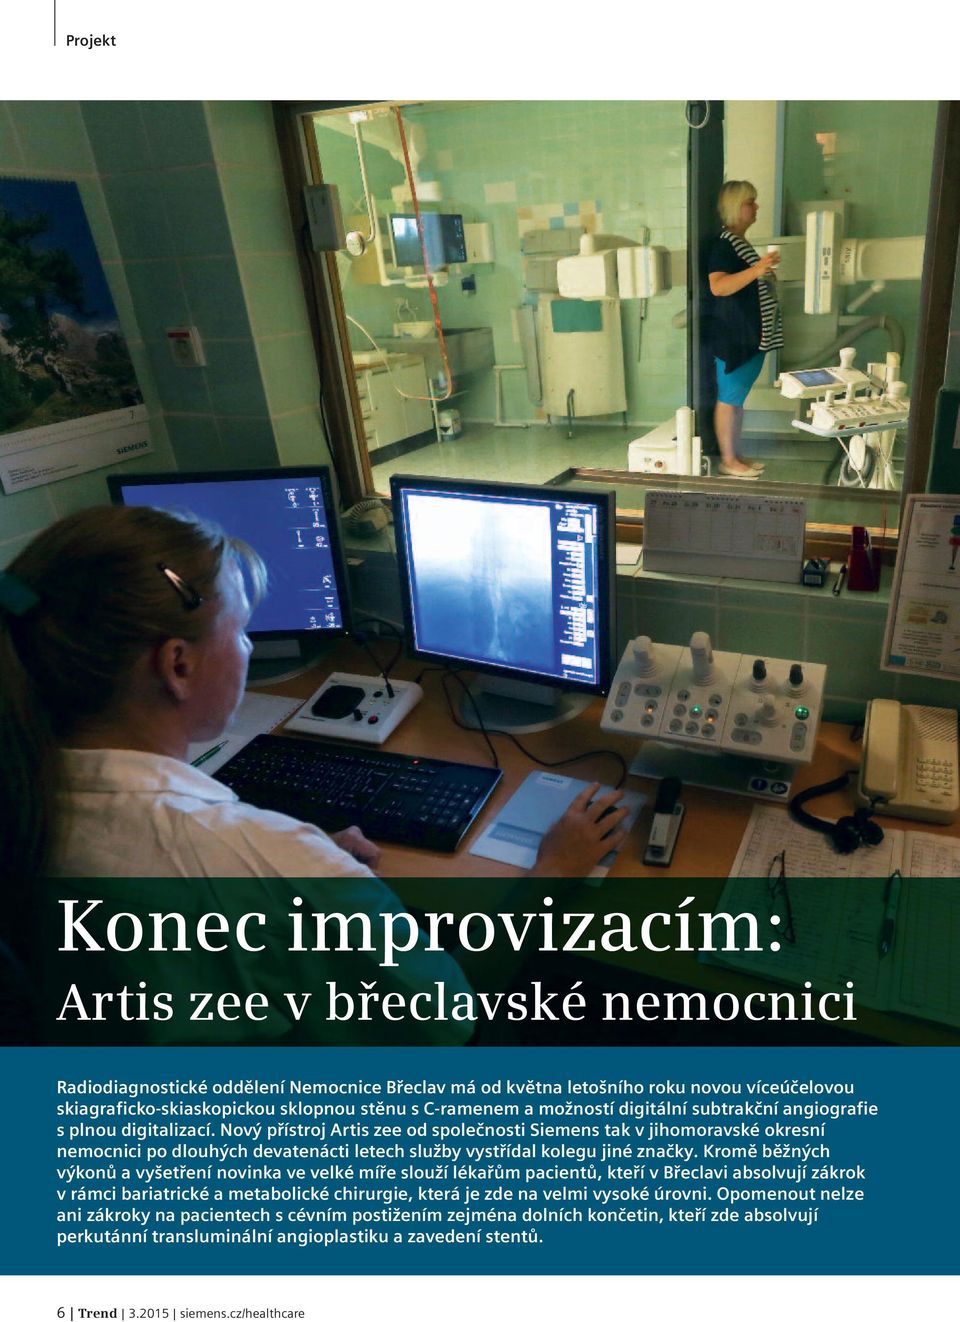 Nový přístroj Artis zee od společnosti Siemens tak v jihomoravské okresní nemocnici po dlouhých devatenácti letech služby vystřídal kolegu jiné značky.